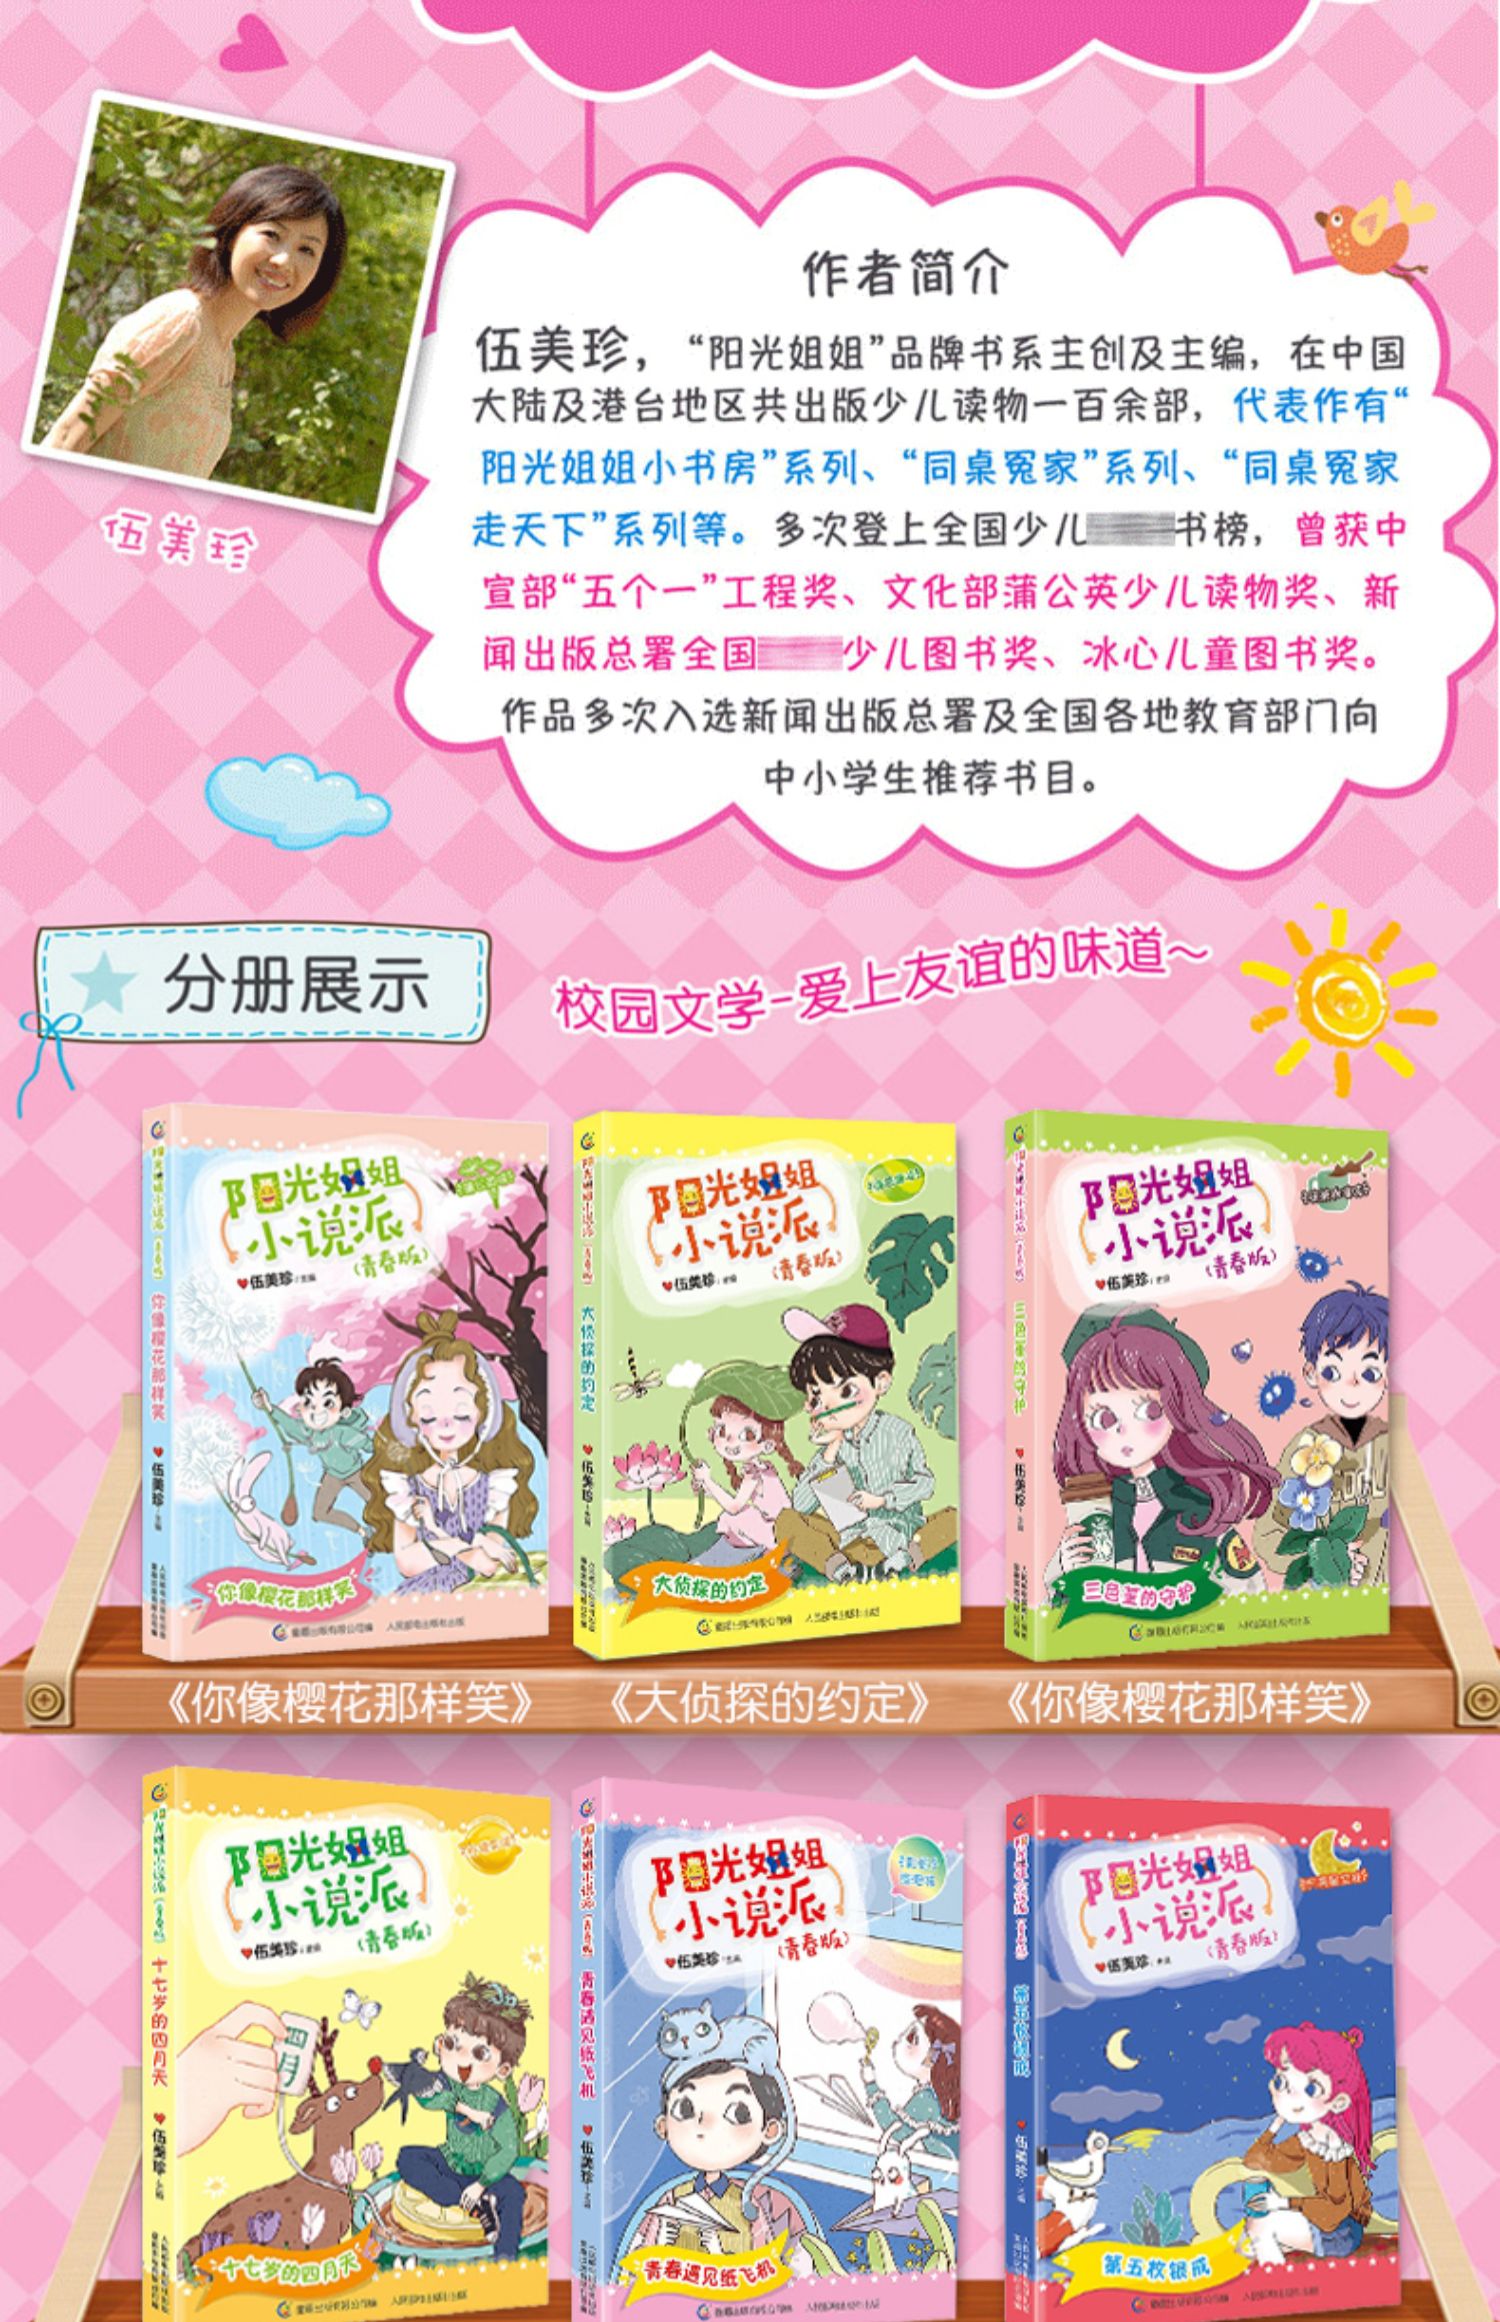 【颜系图书】阳光姐姐小说派青春版全套6册 伍美珍的书 儿童文学故事